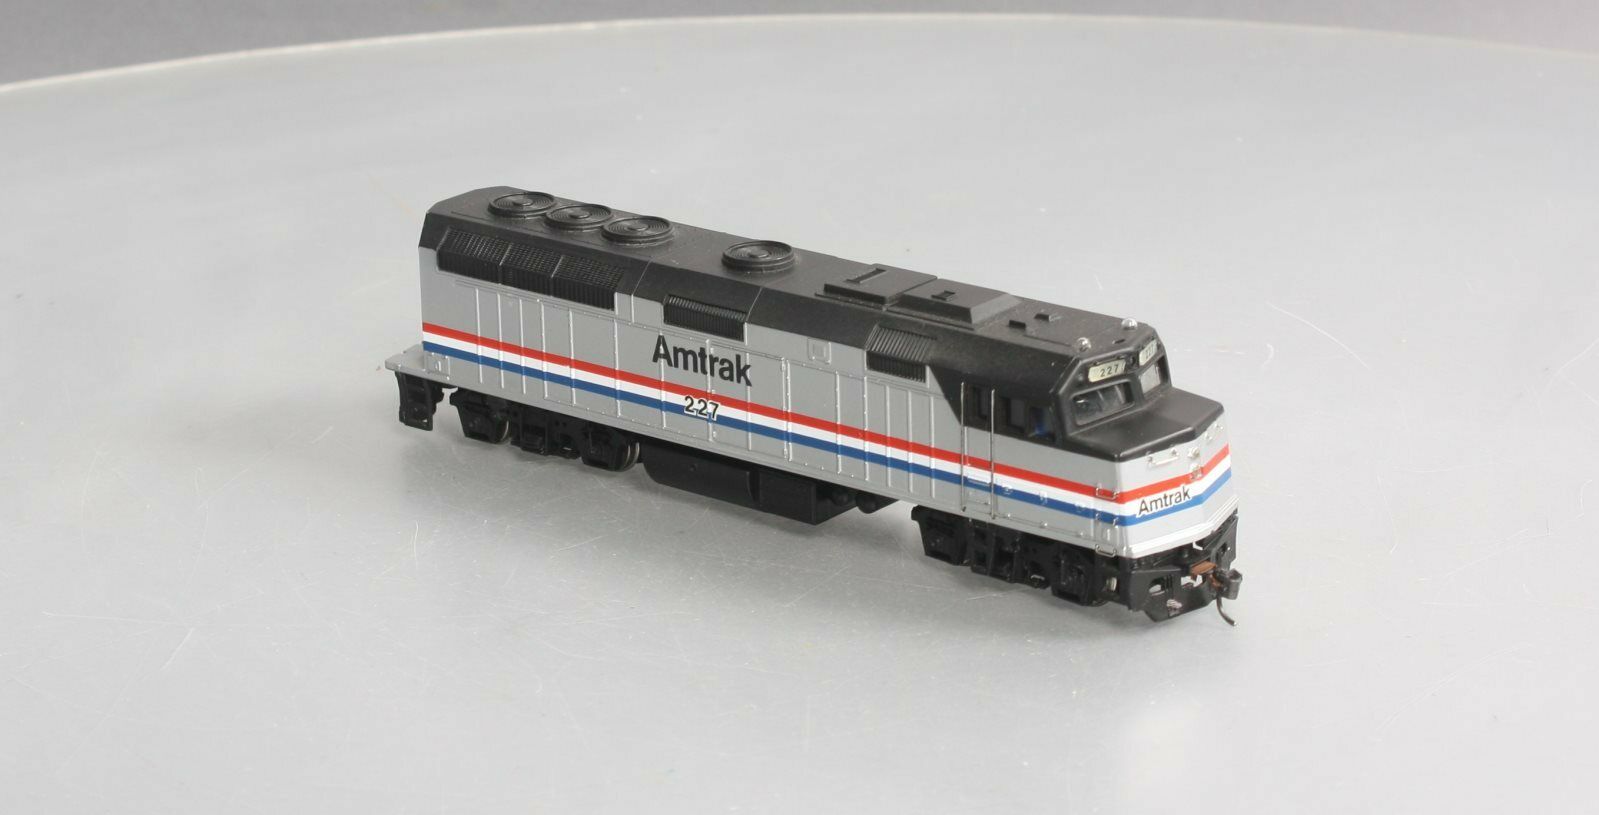 HO Scale - Bachmann - Locomotive, Diesel, EMD F40PH - Amtrak - 227